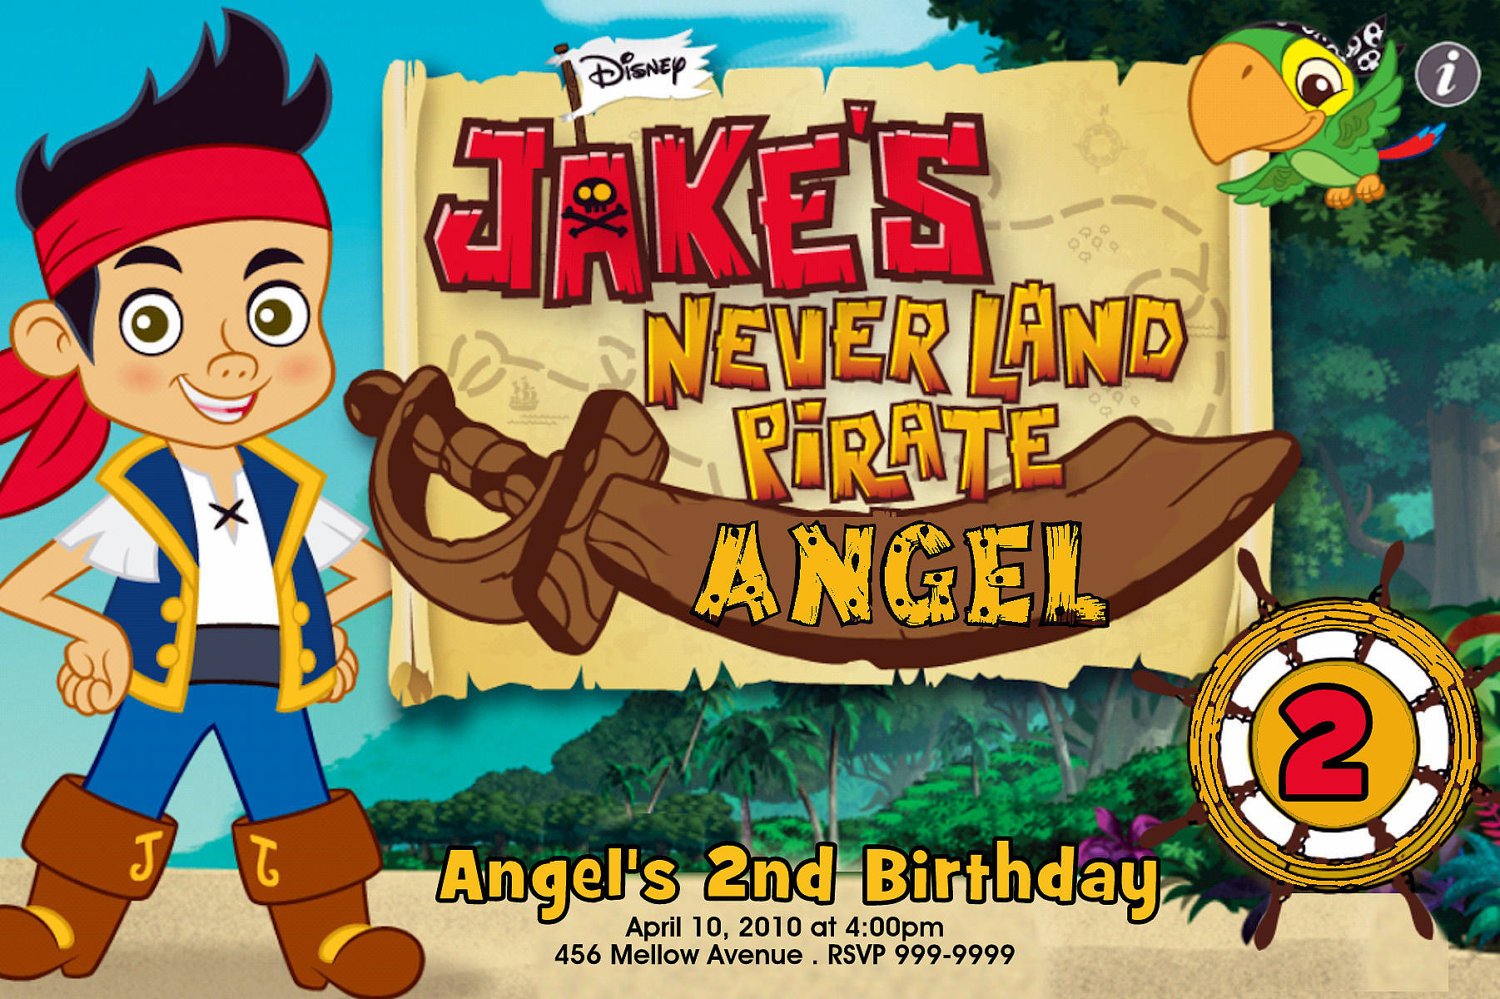 Full jake and the neverland pirates birthday invitations